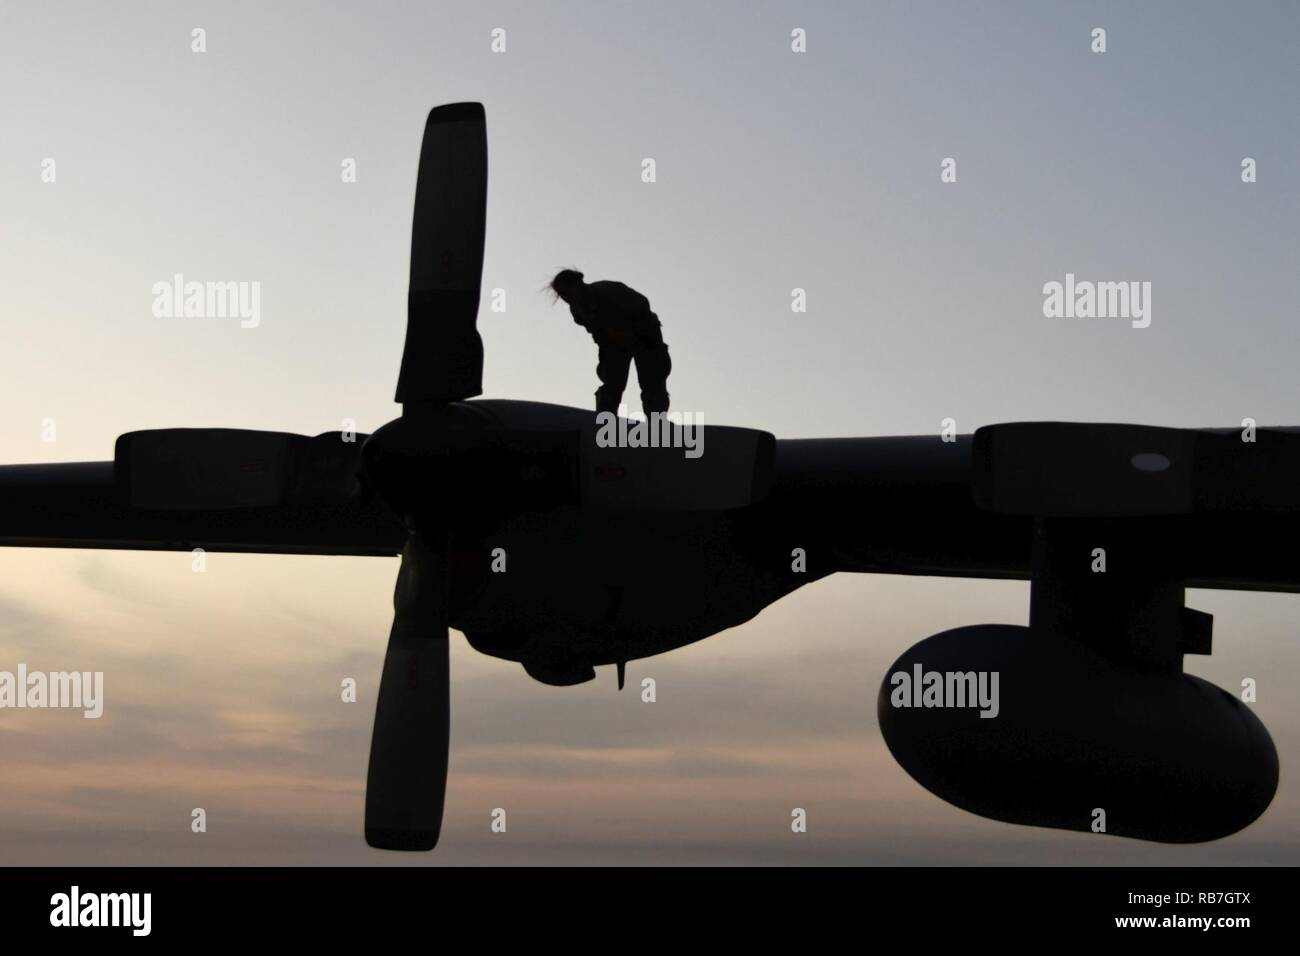 Ein 386 Expeditionary Aircraft Maintenance Squadron Aircraft Maintenance Unit Betreuer prüft eine C-130H Hercules an einem geheimen Ort im Südwesten Asien Dez. 4, 2016. Die betreuer prüfen Flugzeuge gründlich vor und nach jedem Flug. Stockfoto